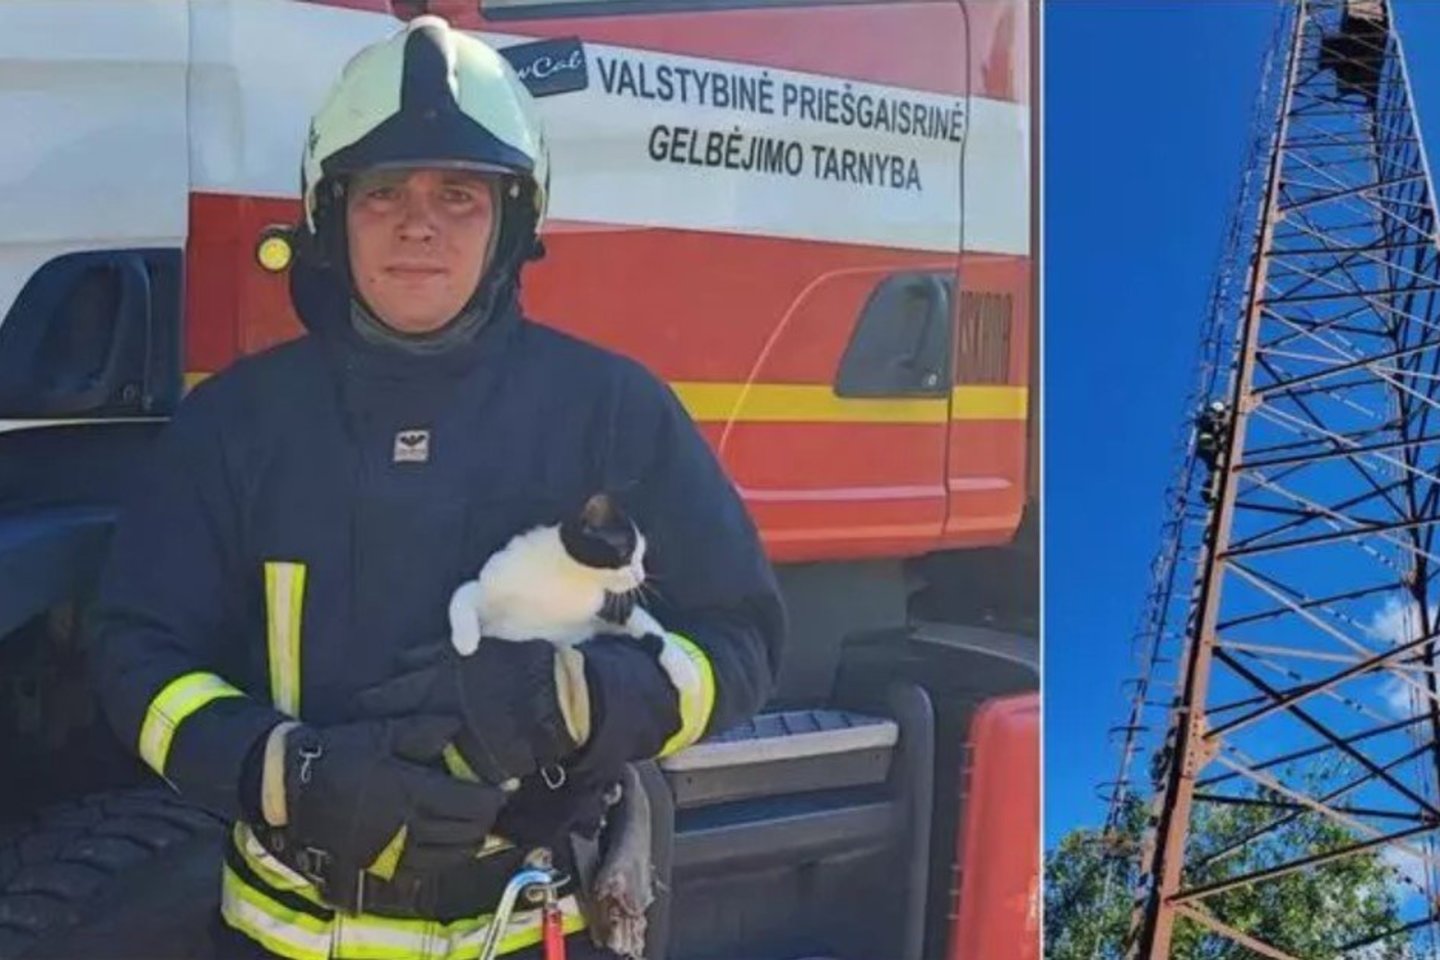 Katinui drąsos užteko tik užlipti į seną radijo ryšio bokštą: nukelti teko ugniagesiams gelbėtojams.<br>„Vakarų ekspreso“/Valstybinės priešgaisrinės gelbėjimo tarnybos nuotr.